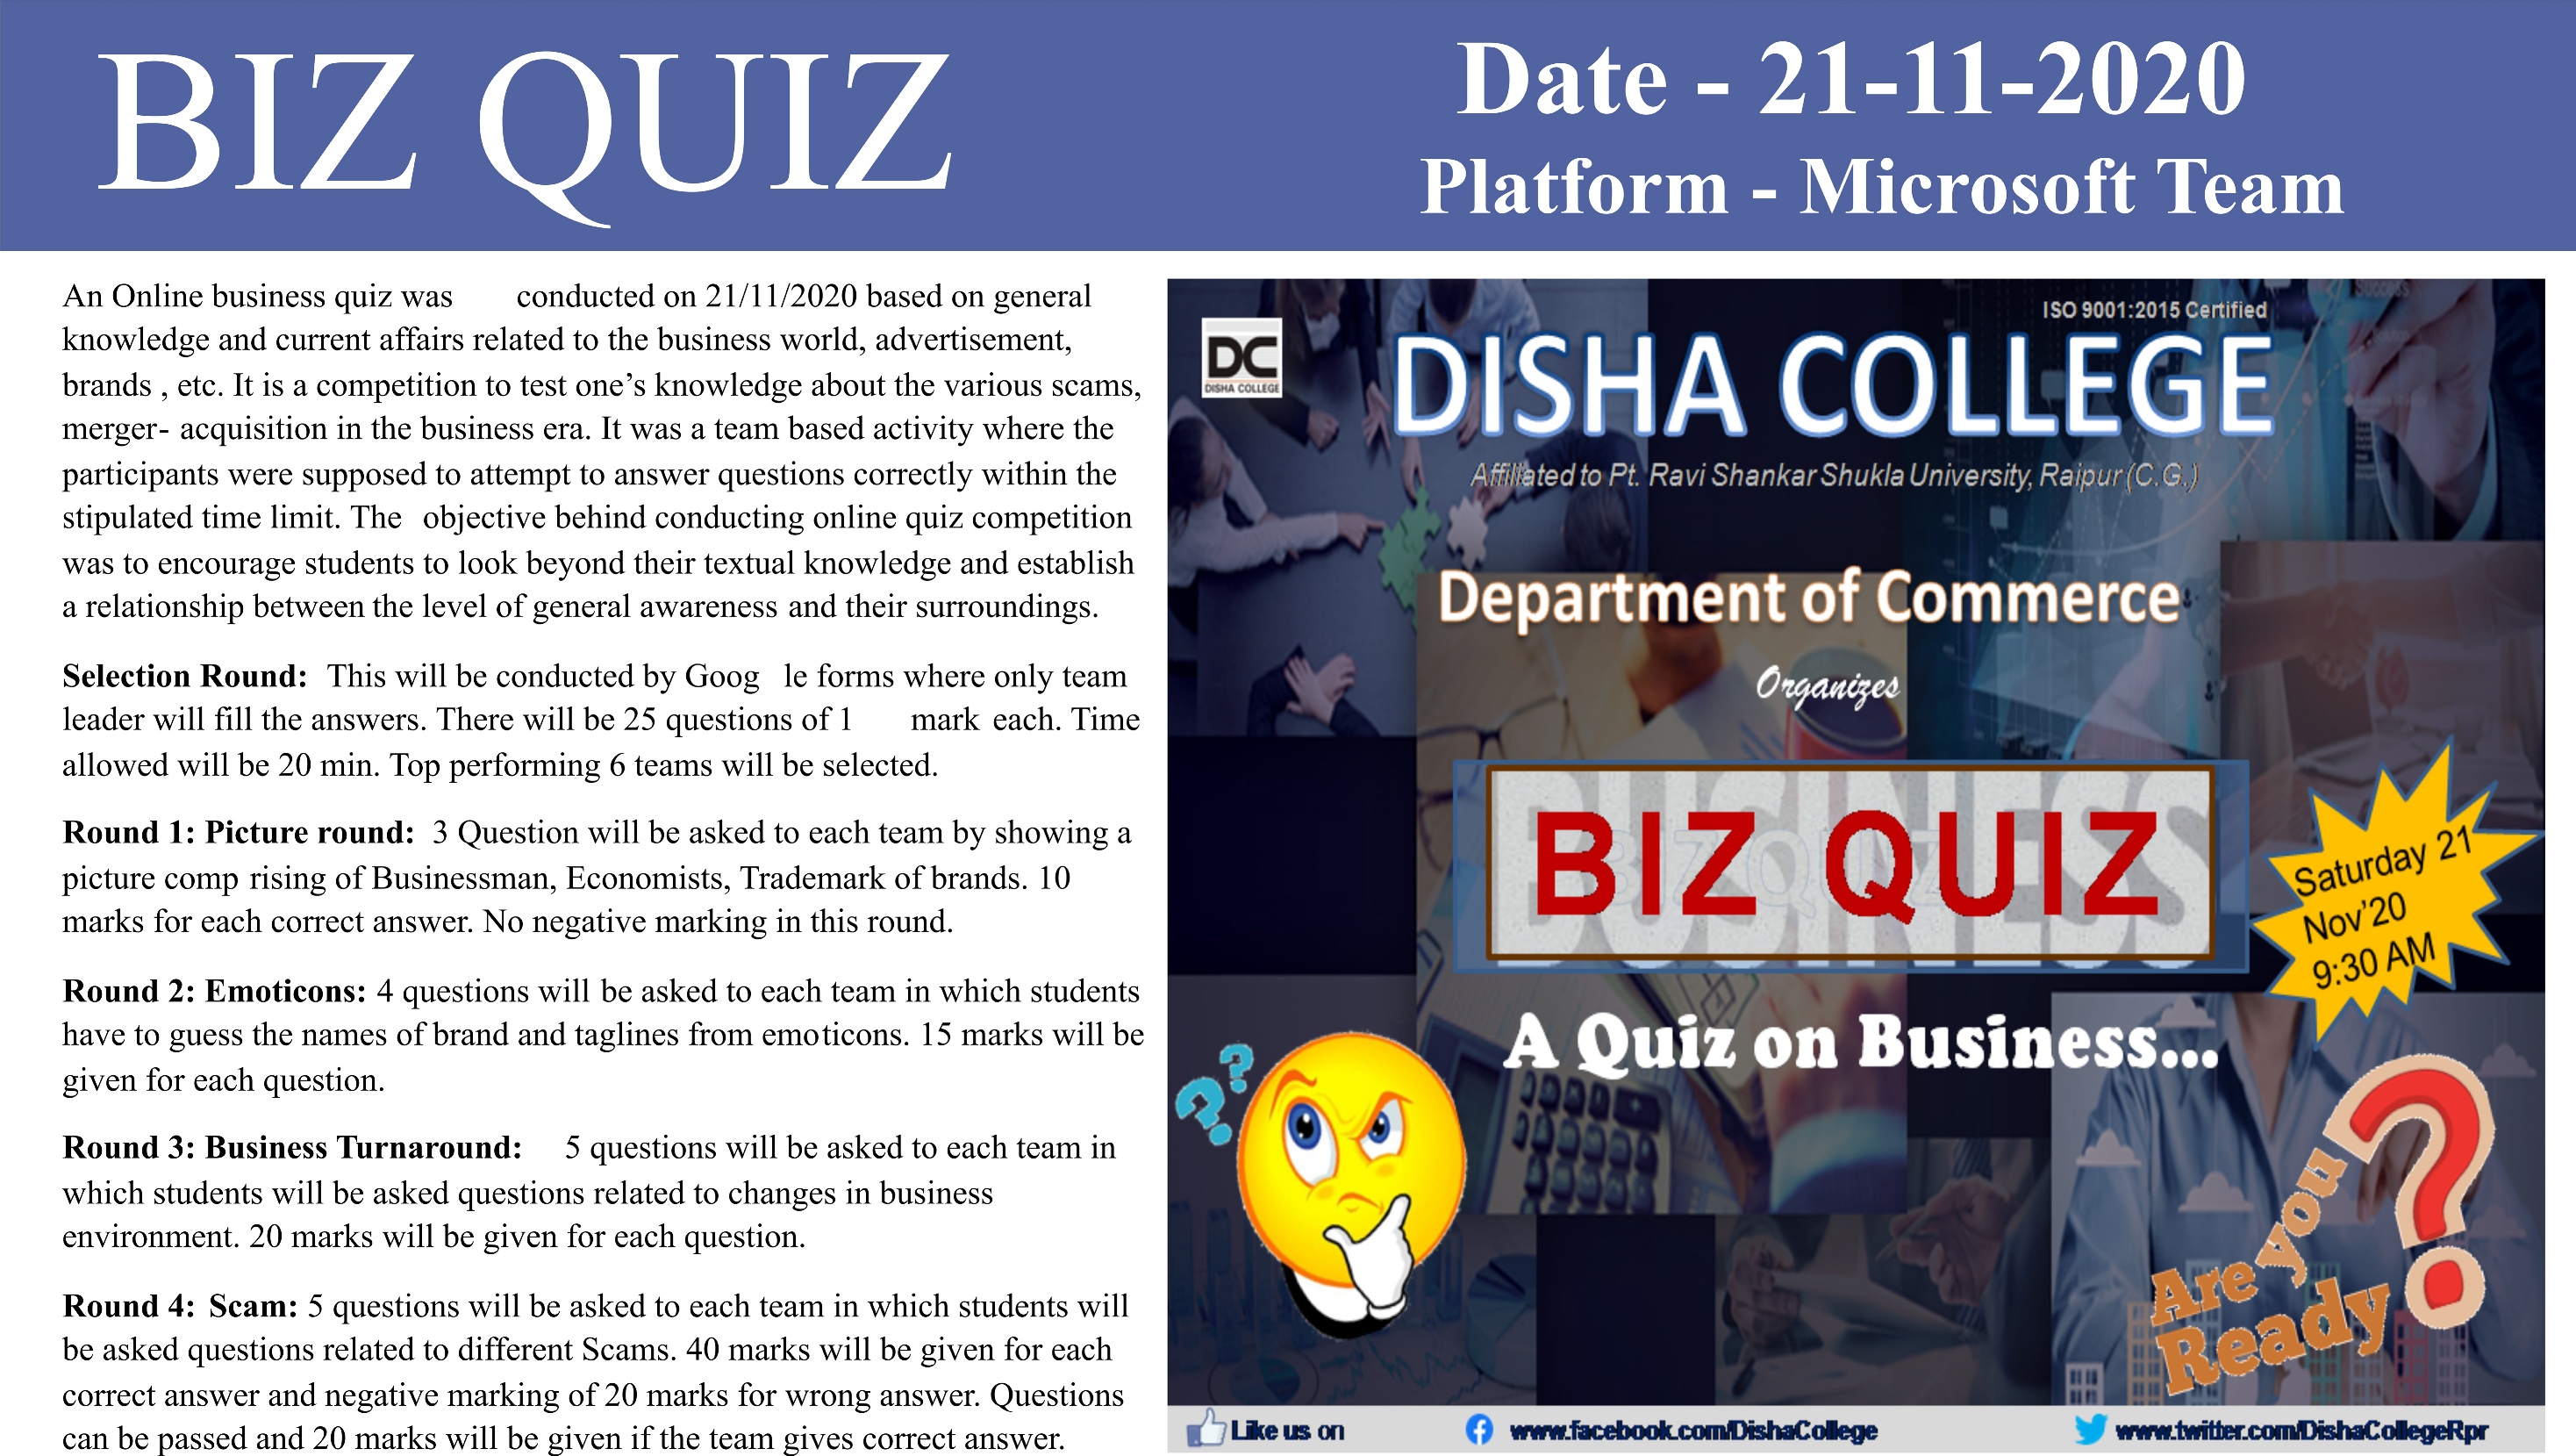 BIZ QUIZ - A Quiz on Business....